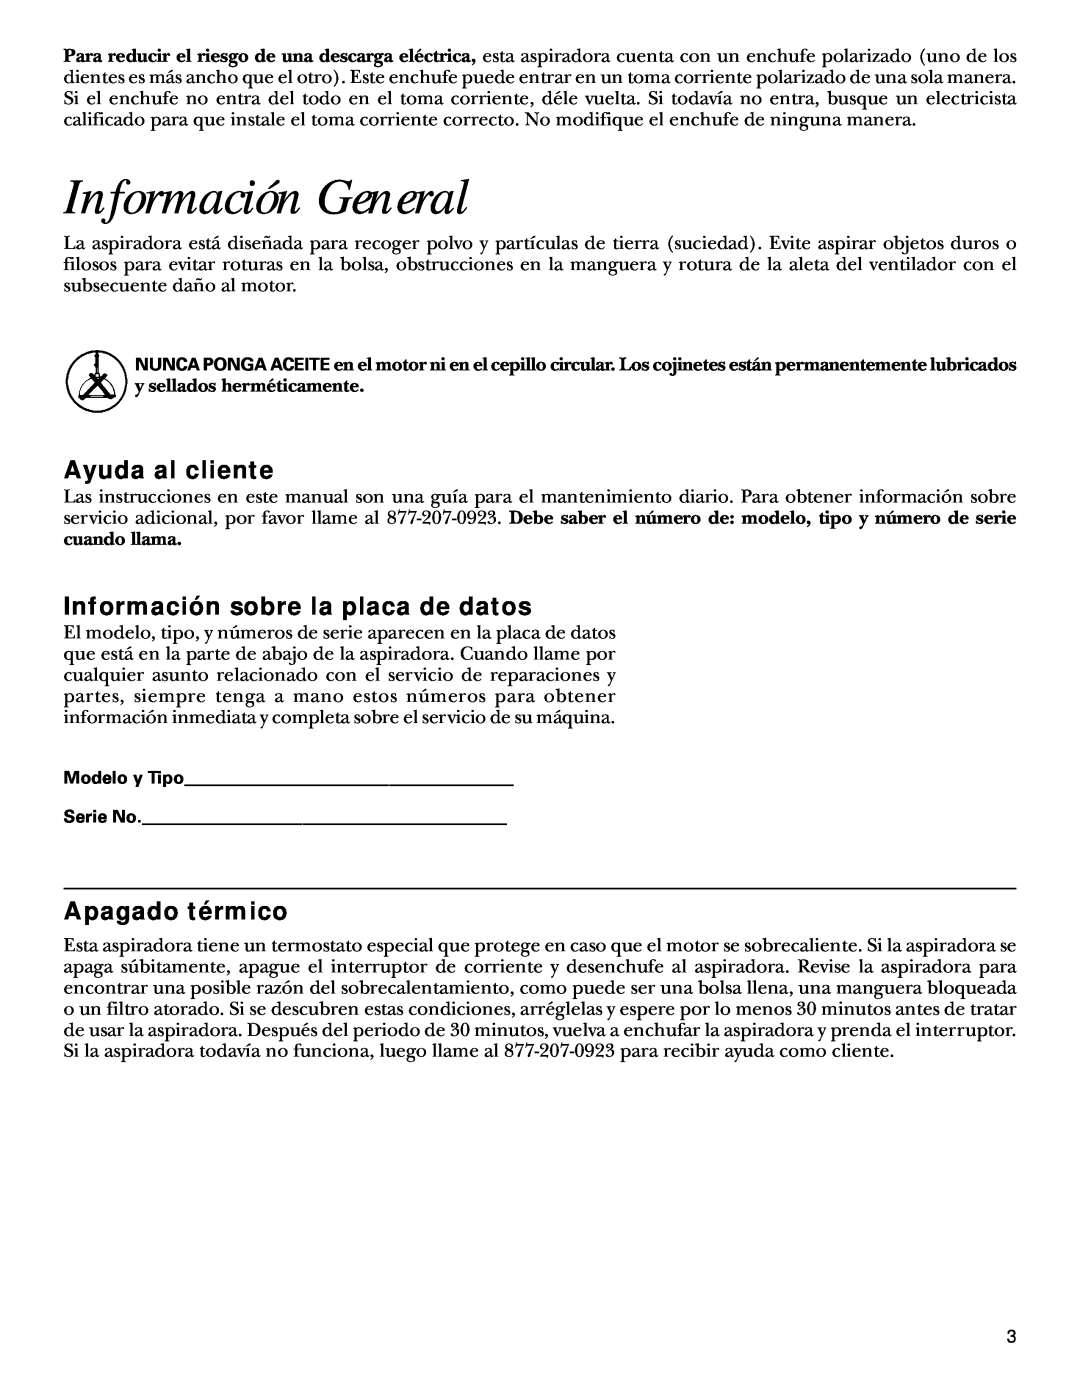 GE 106575, 71045 warranty Información General, Ayuda al cliente, Información sobre la placa de datos, Apagado térmico 